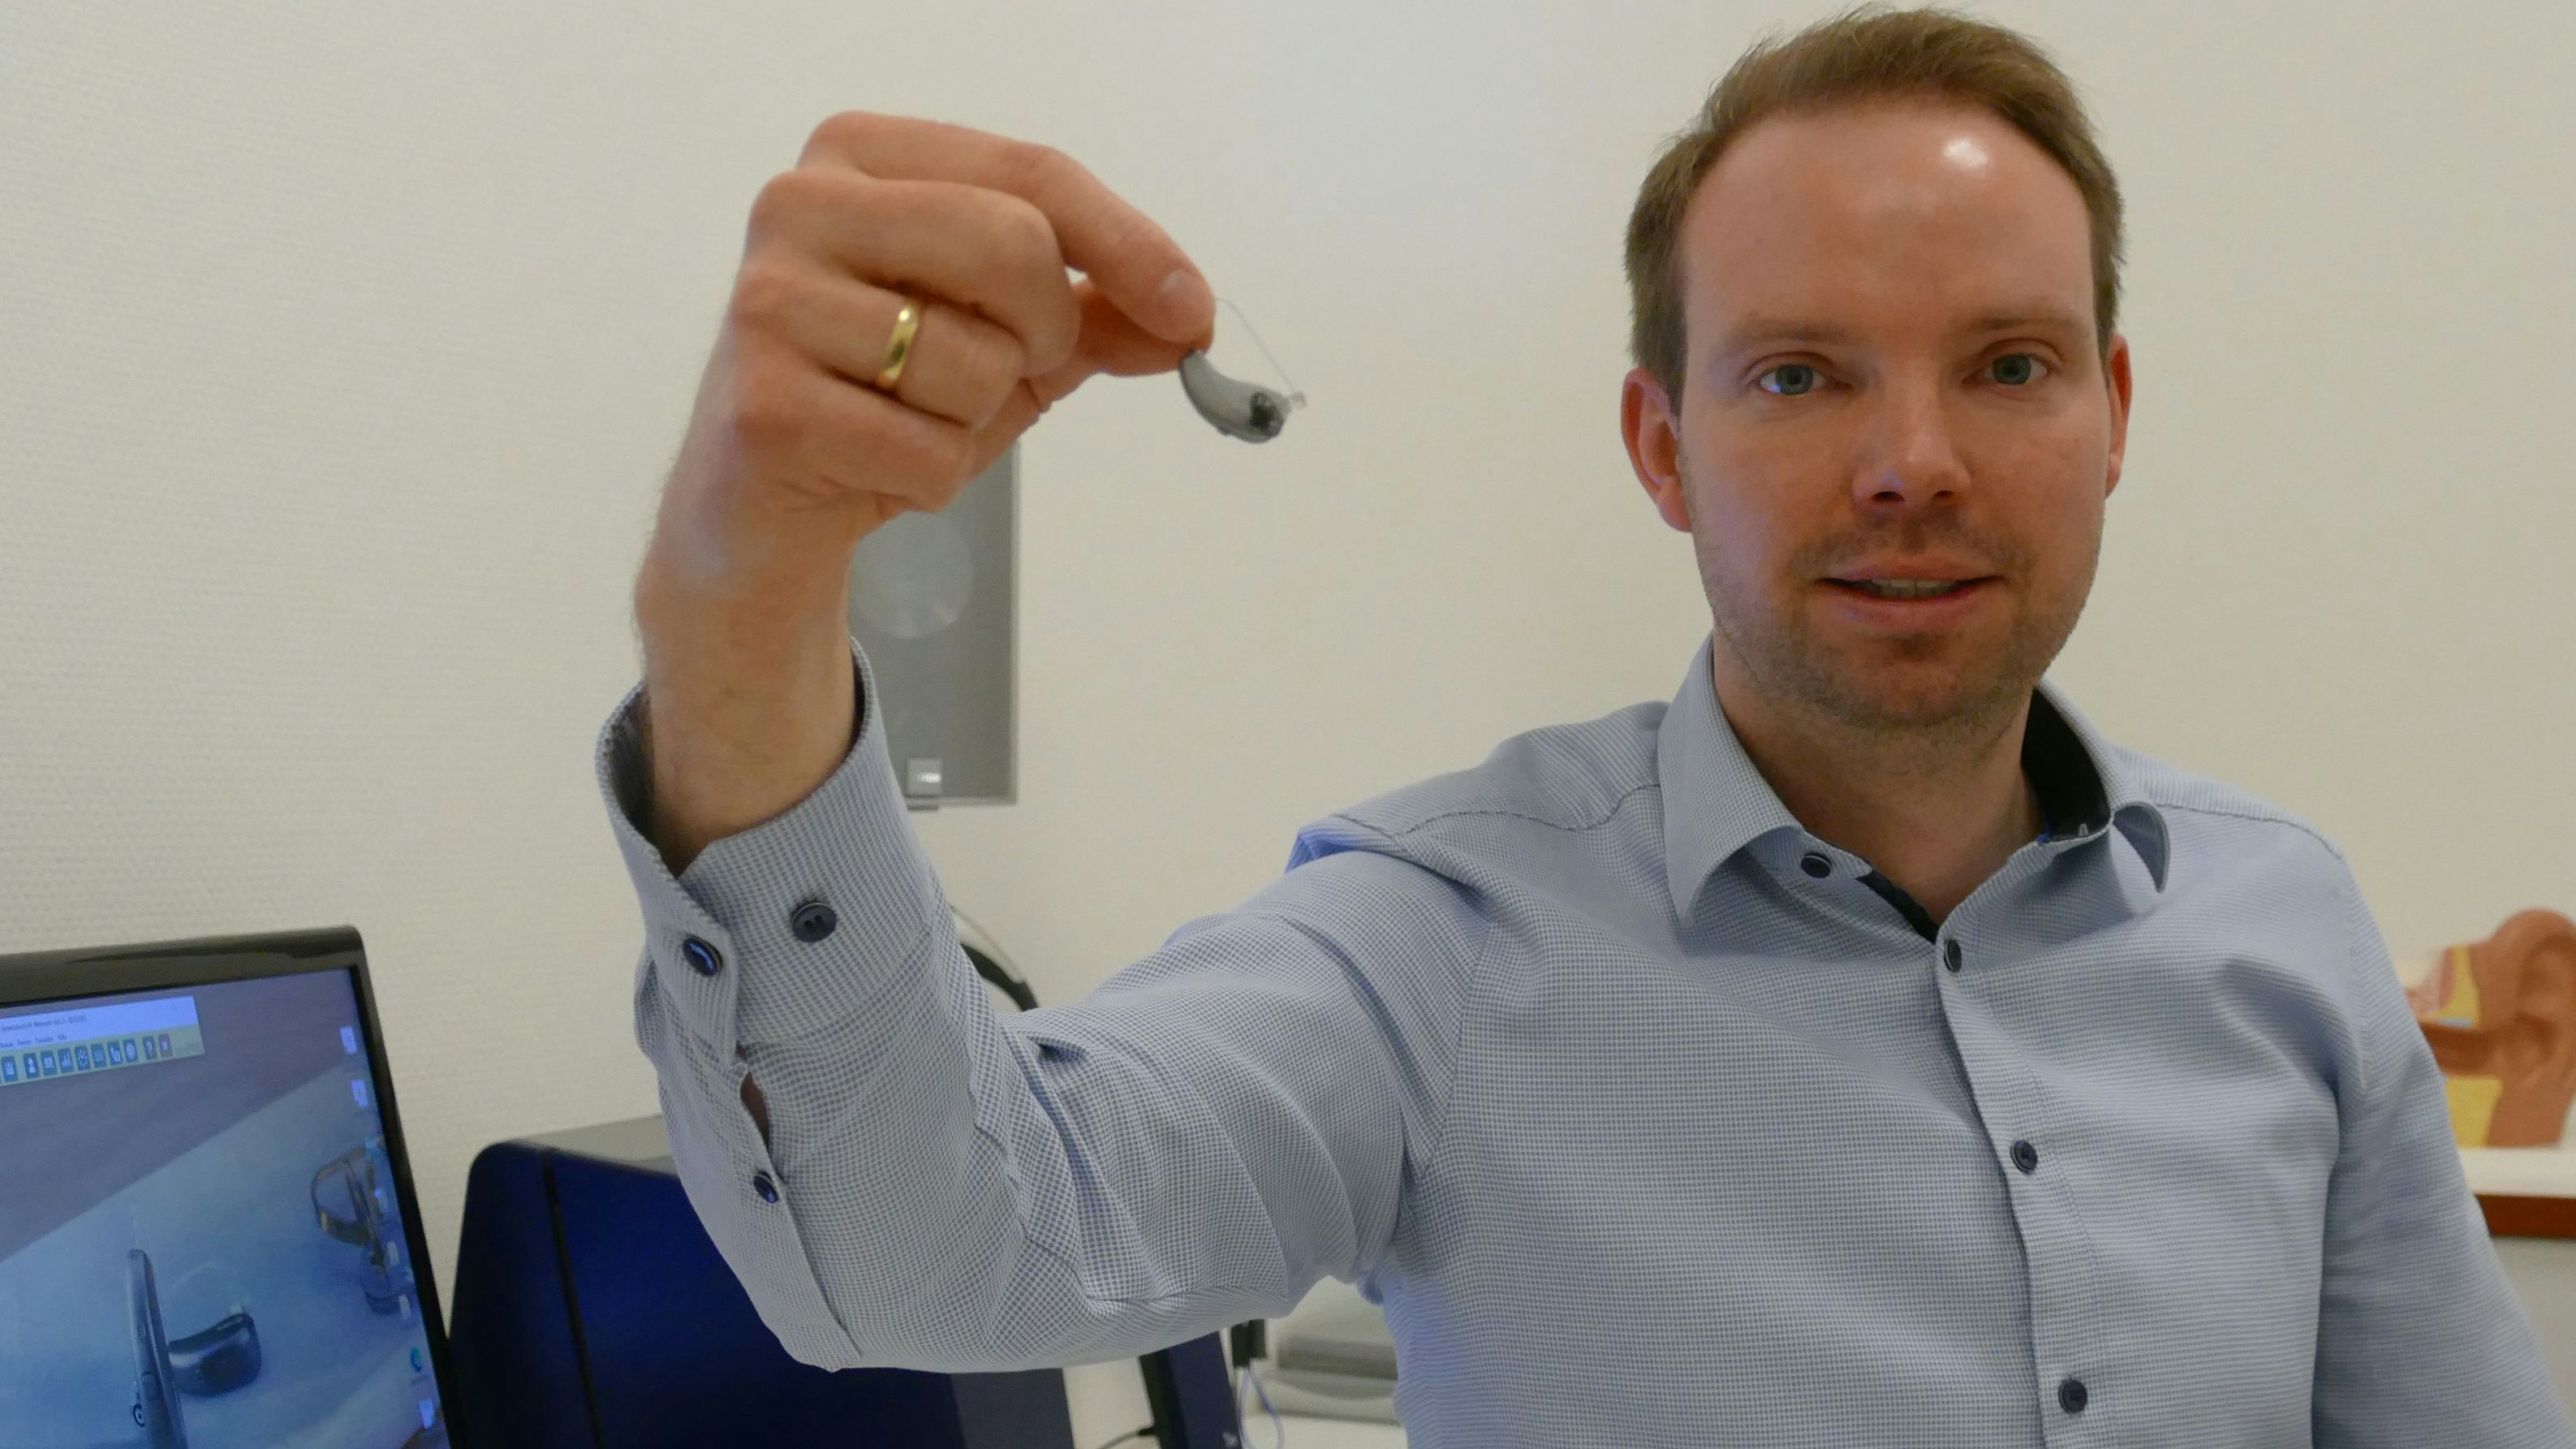 Hörakustikmeister Johannes Pancratz zeigt ein modernes Hörgerät. Manche Modelle lassen sich per Bluetooth mit Telefon und Fernseher verbinden. Foto: Stix